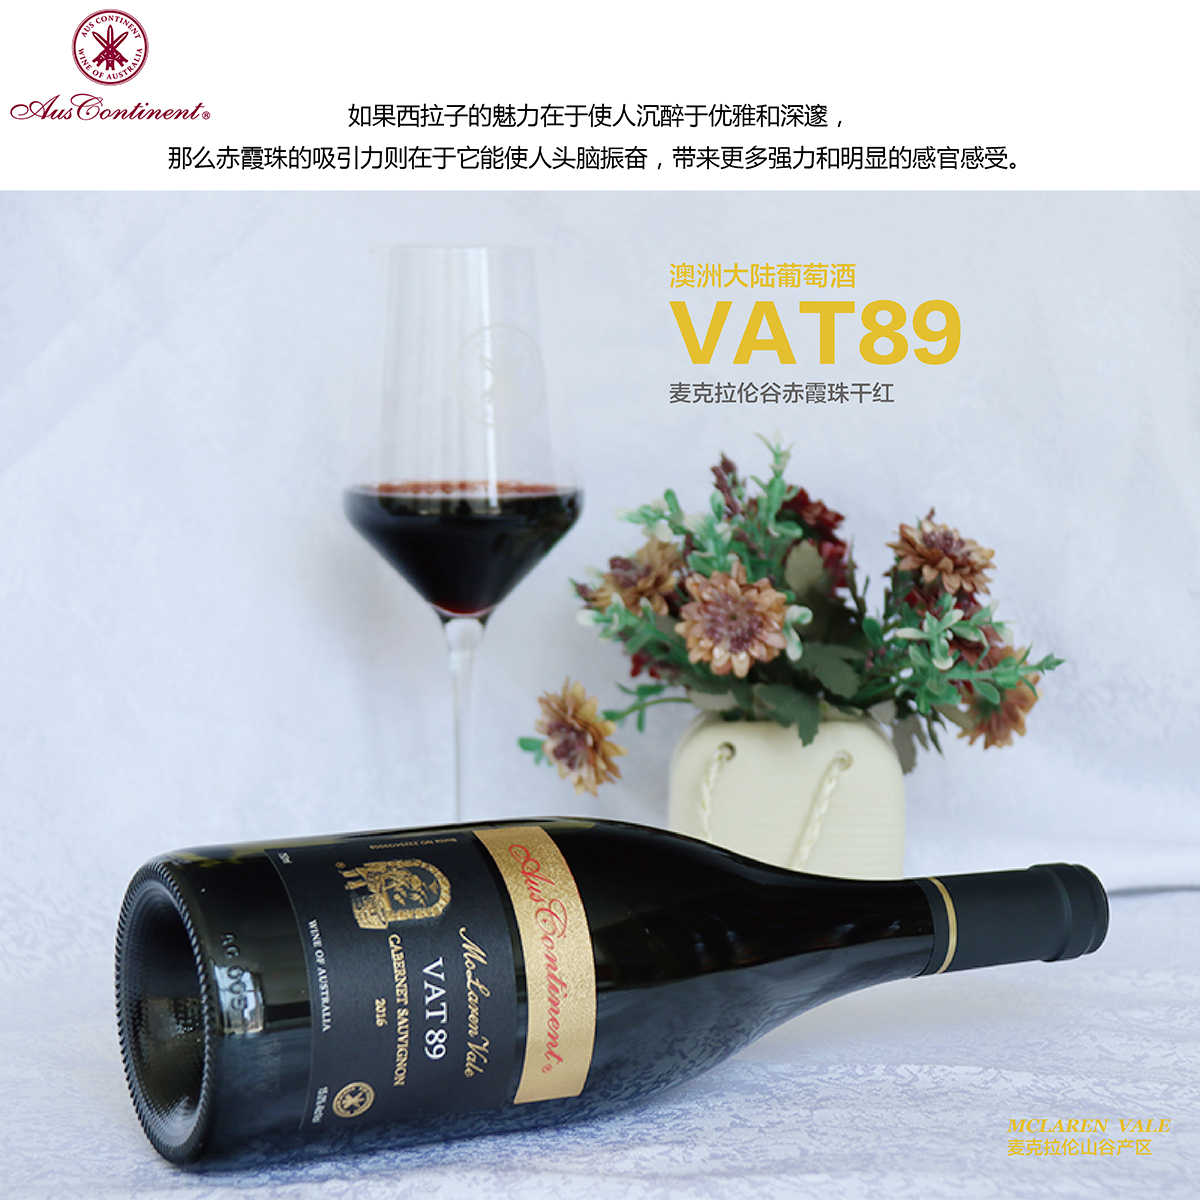 澳大利亚麦克拉伦谷产区澳洲大陆酒庄赤霞珠VAT 89干红葡萄酒红酒